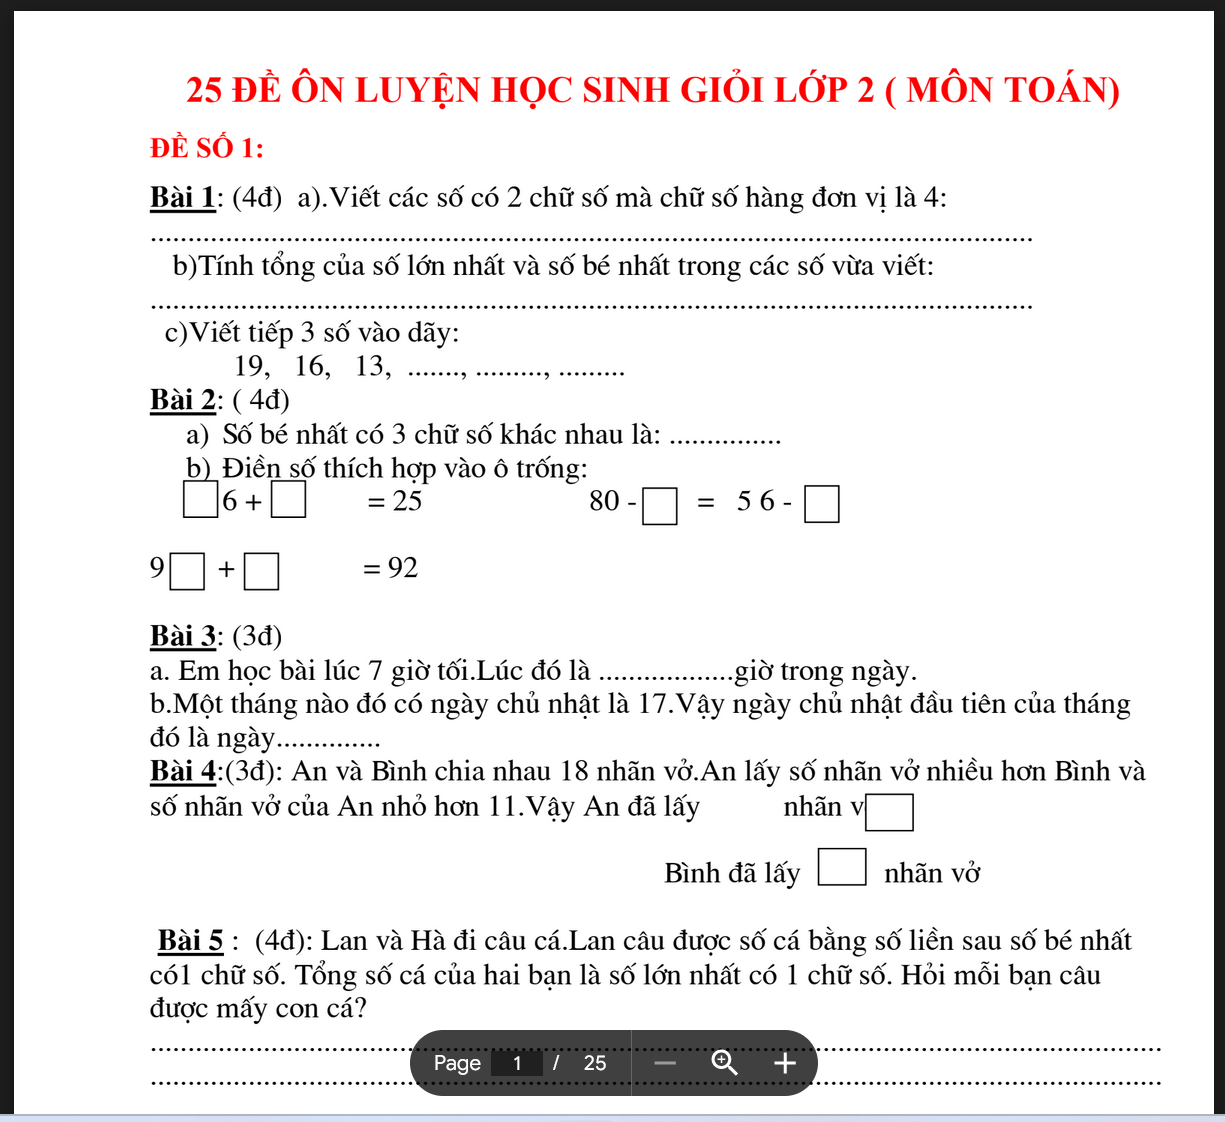 TÀI LIỆU 25 Đề thi học sinh giỏi lớp 2 môn toán có đáp án LINK DRIVE